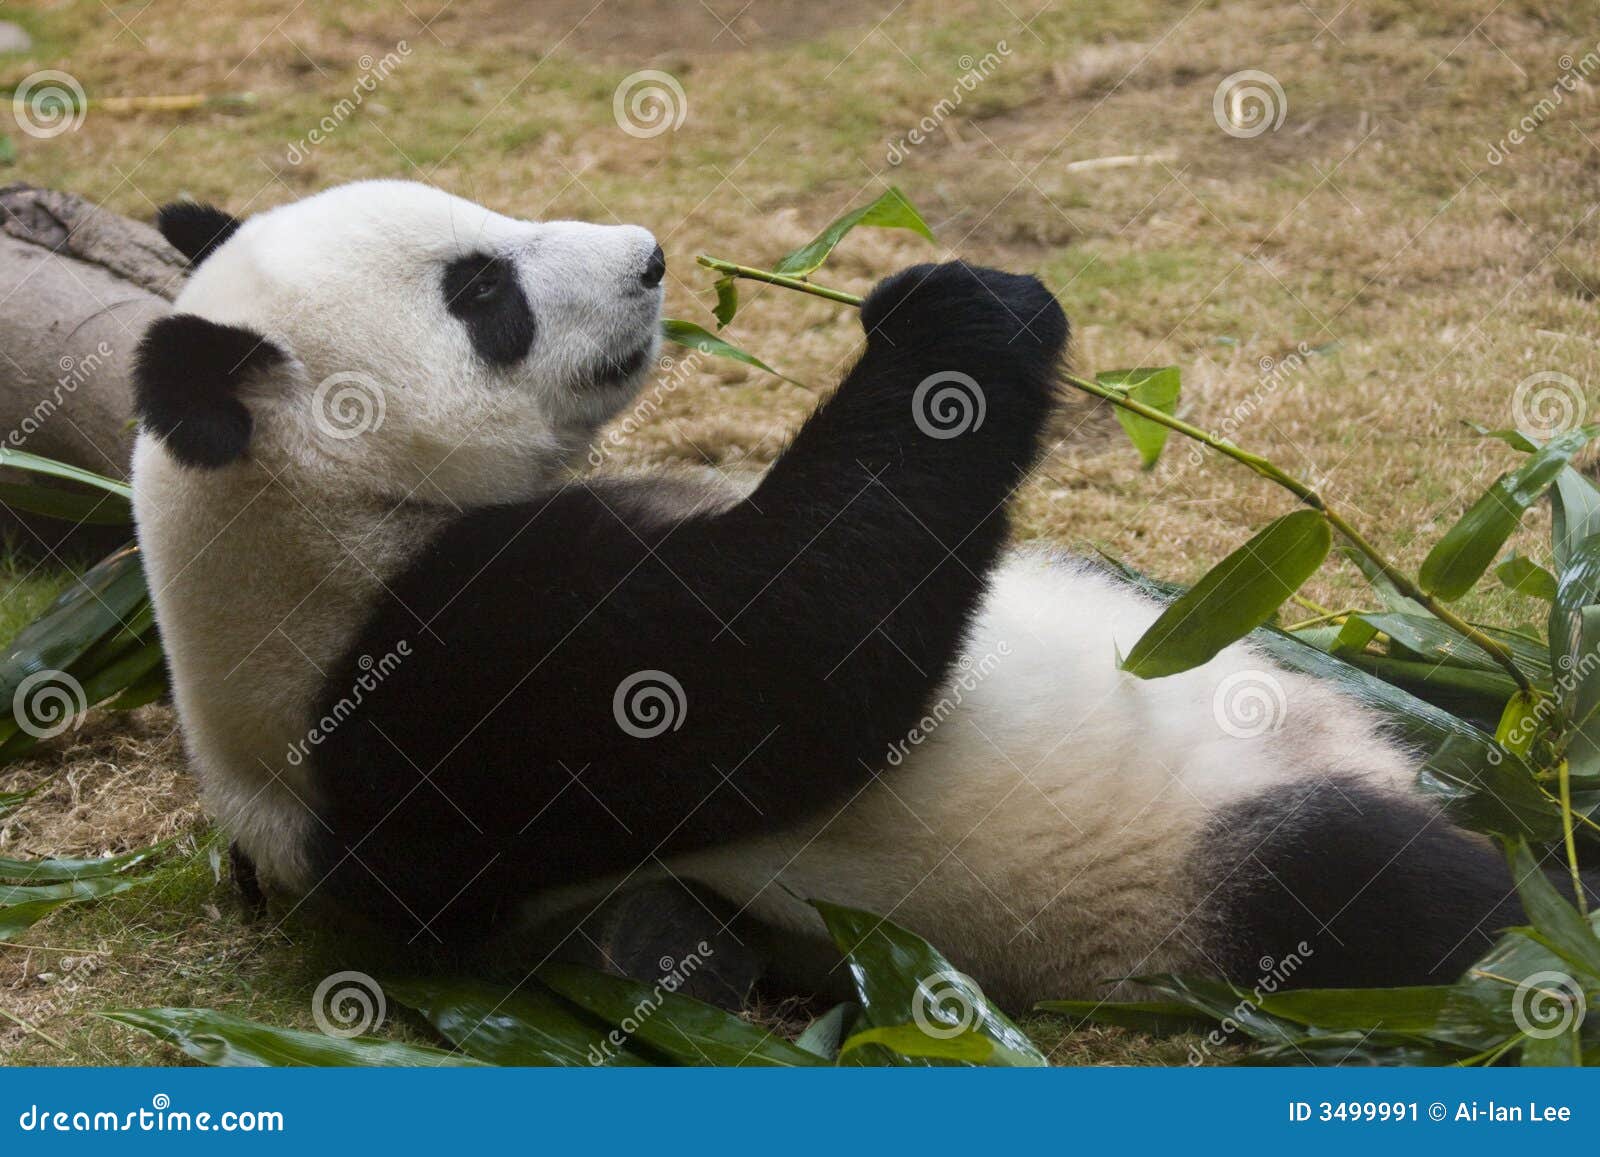 竹吃熊猫. 放松的竹巨型用力嚼的熊猫斜倚